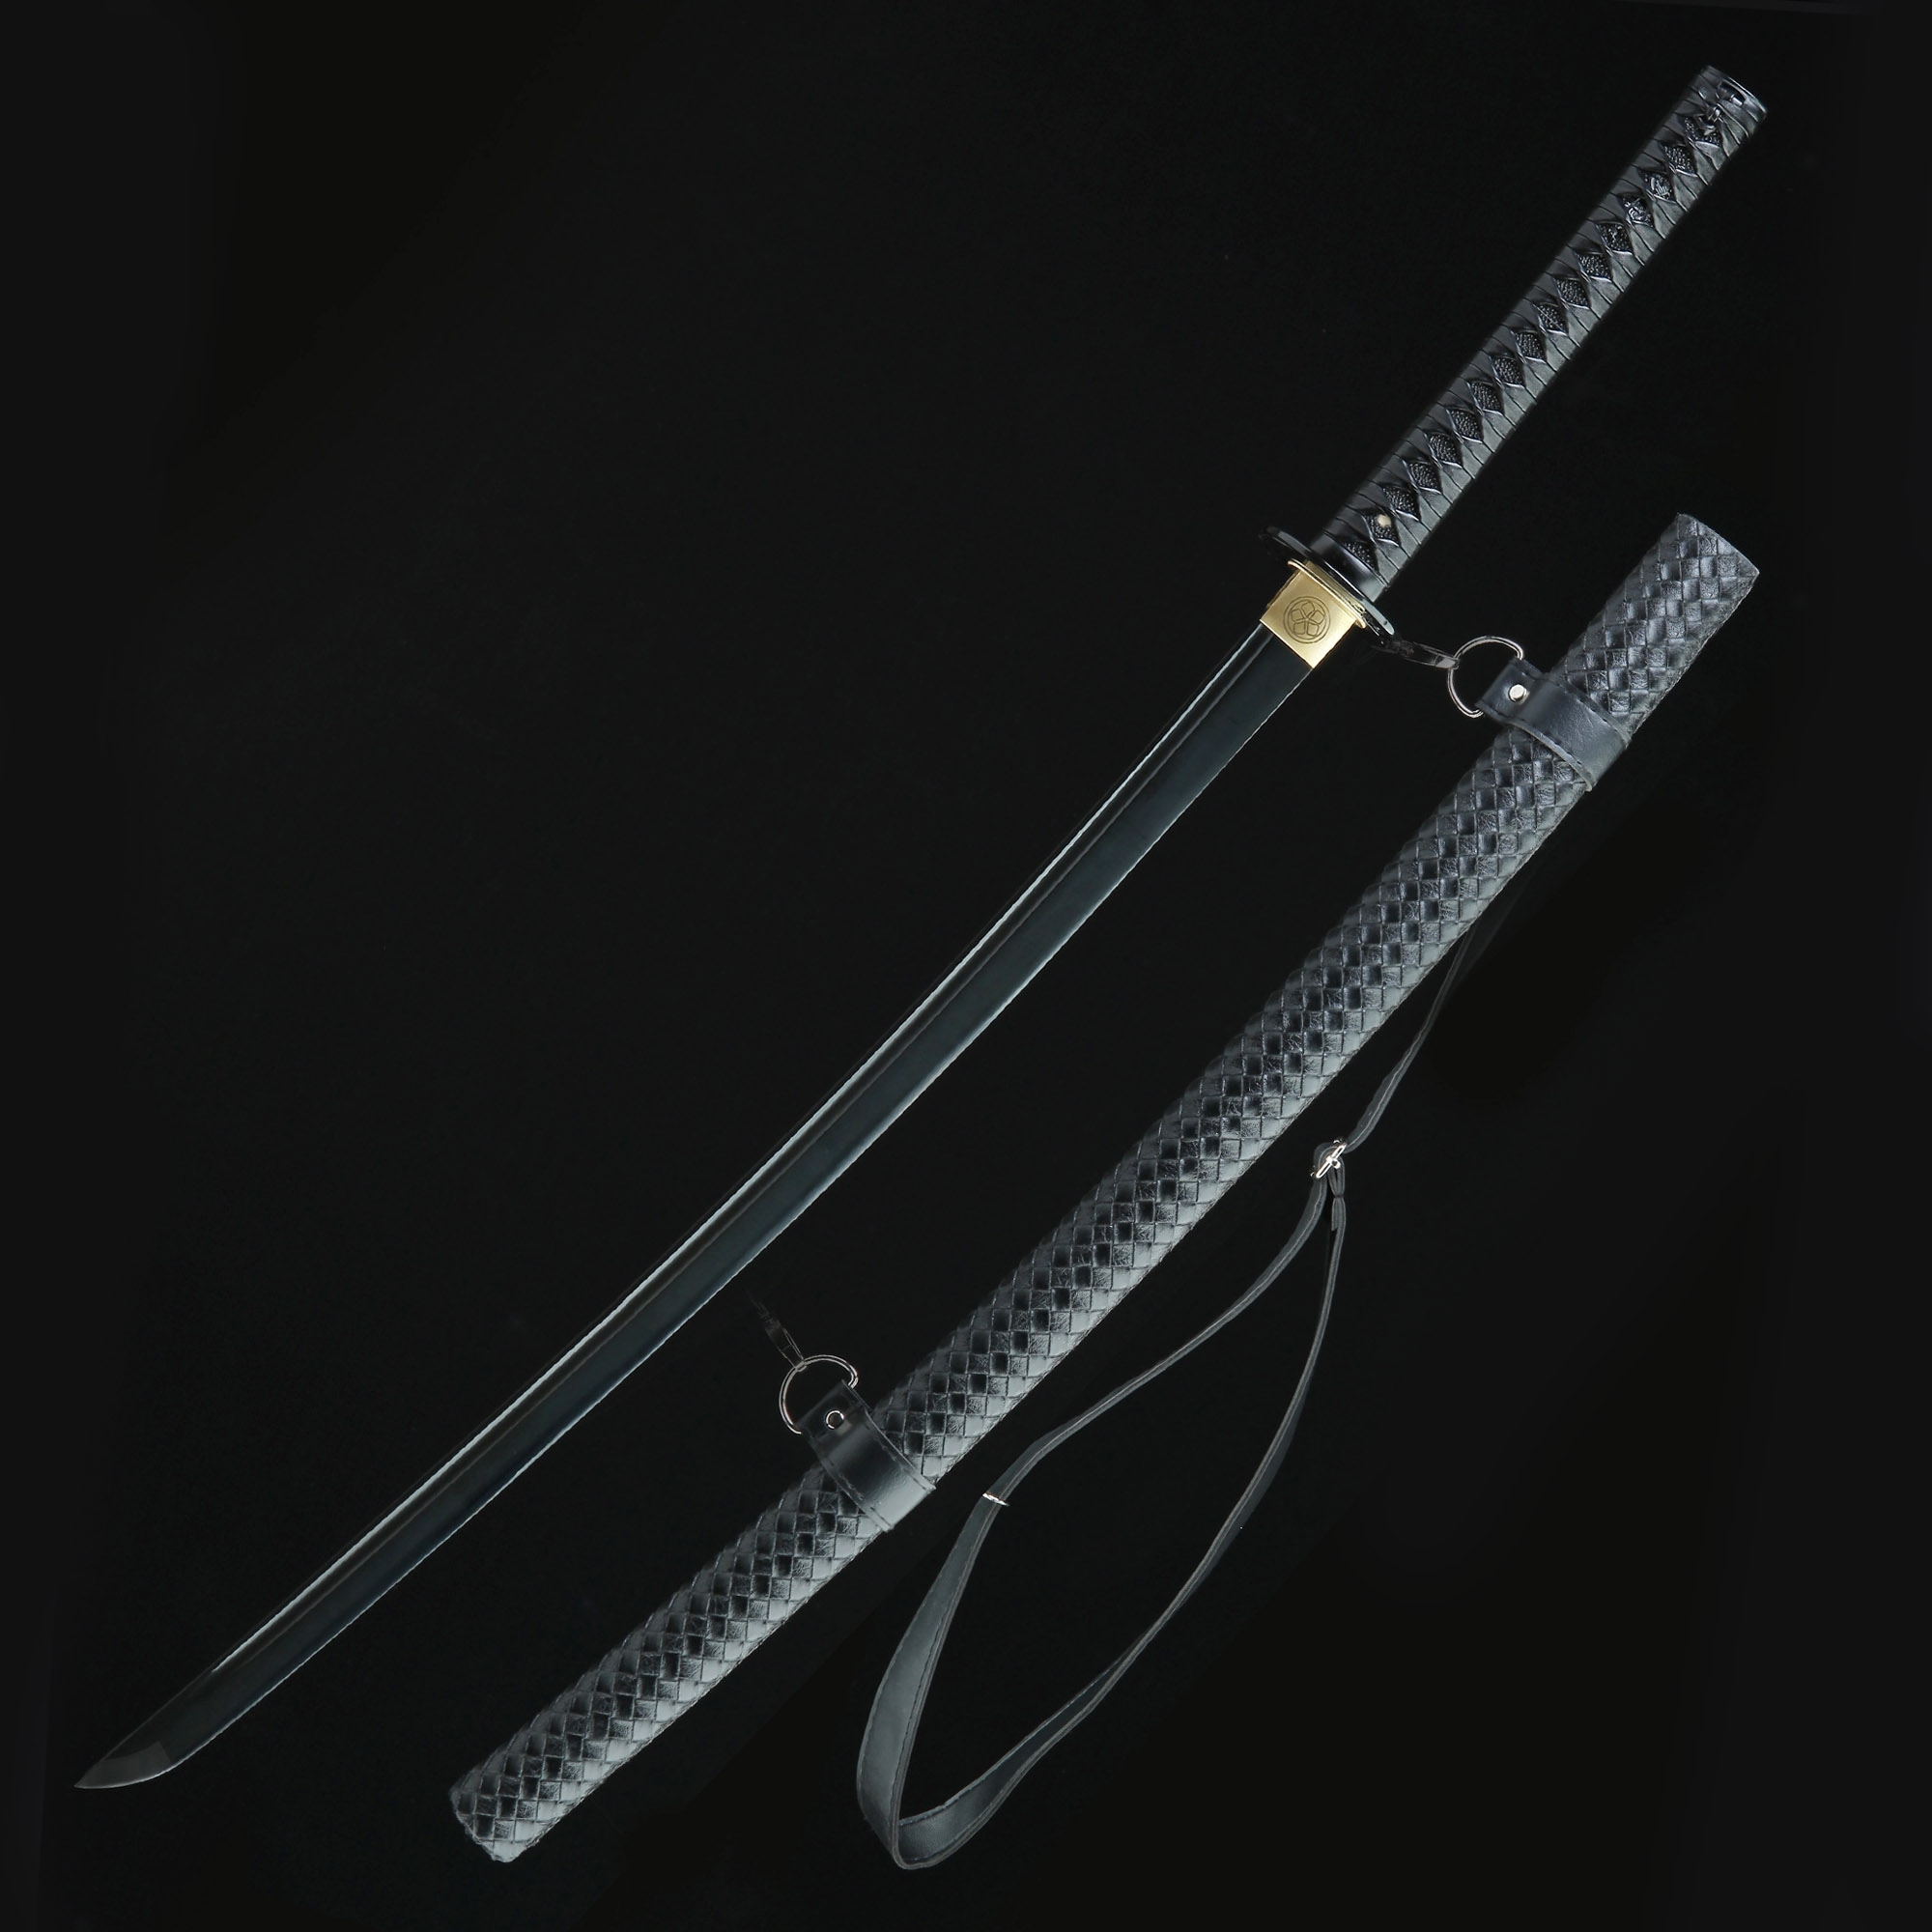 Details about   Sharp Japanese Sword Samurai Katana Saber Manganese Steel Ninja Tanto Full Tang 